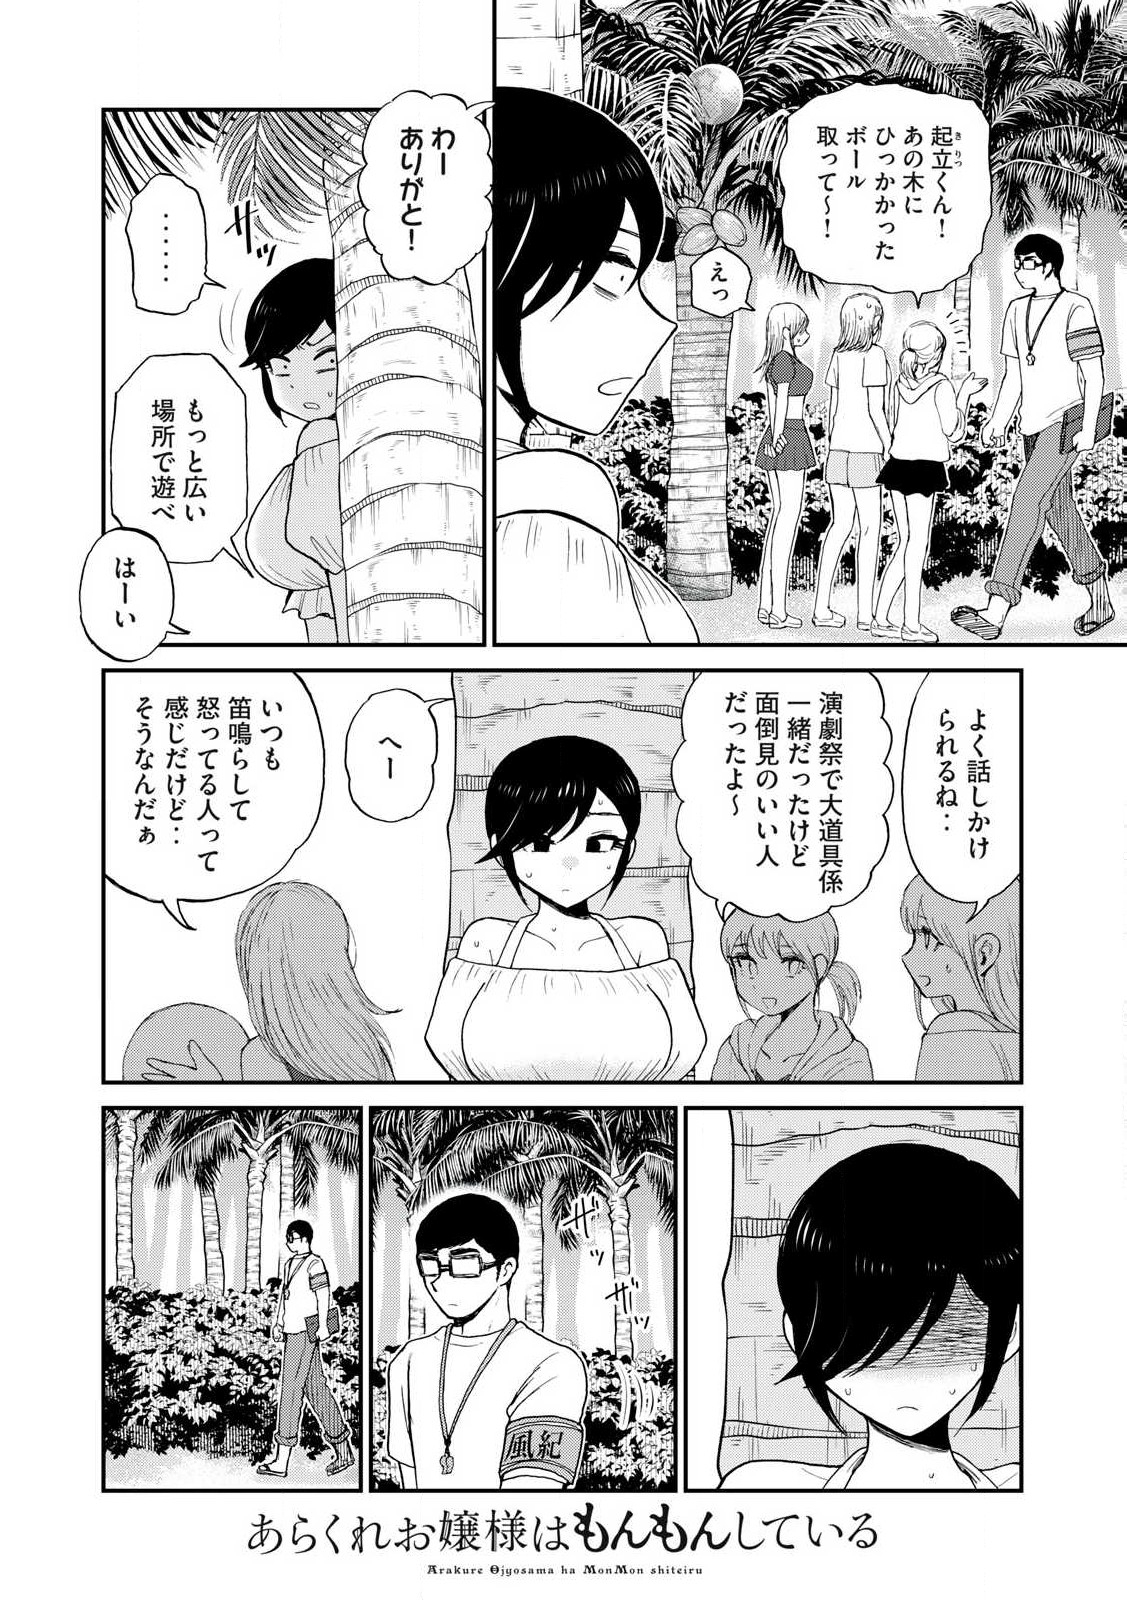 Arakure Ojousama Wa MonMon Shiteiru - Chapter 41.2 - Page 3